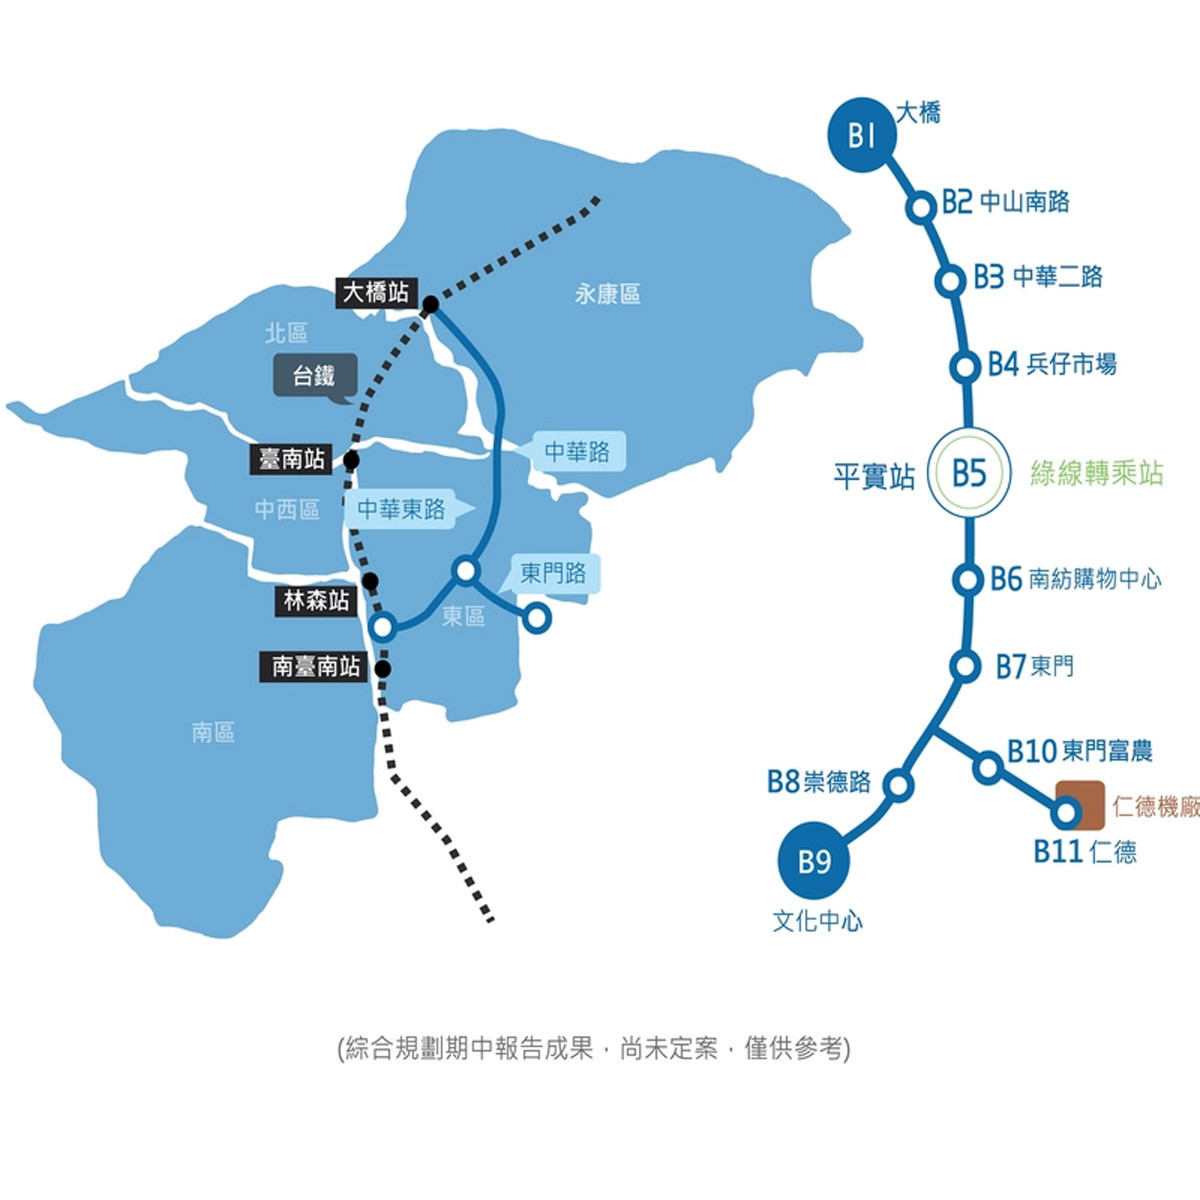 台南藍線規劃貫通平實生活圈與東區重大建設。（資料來源：台南市政府捷運工程局網站）